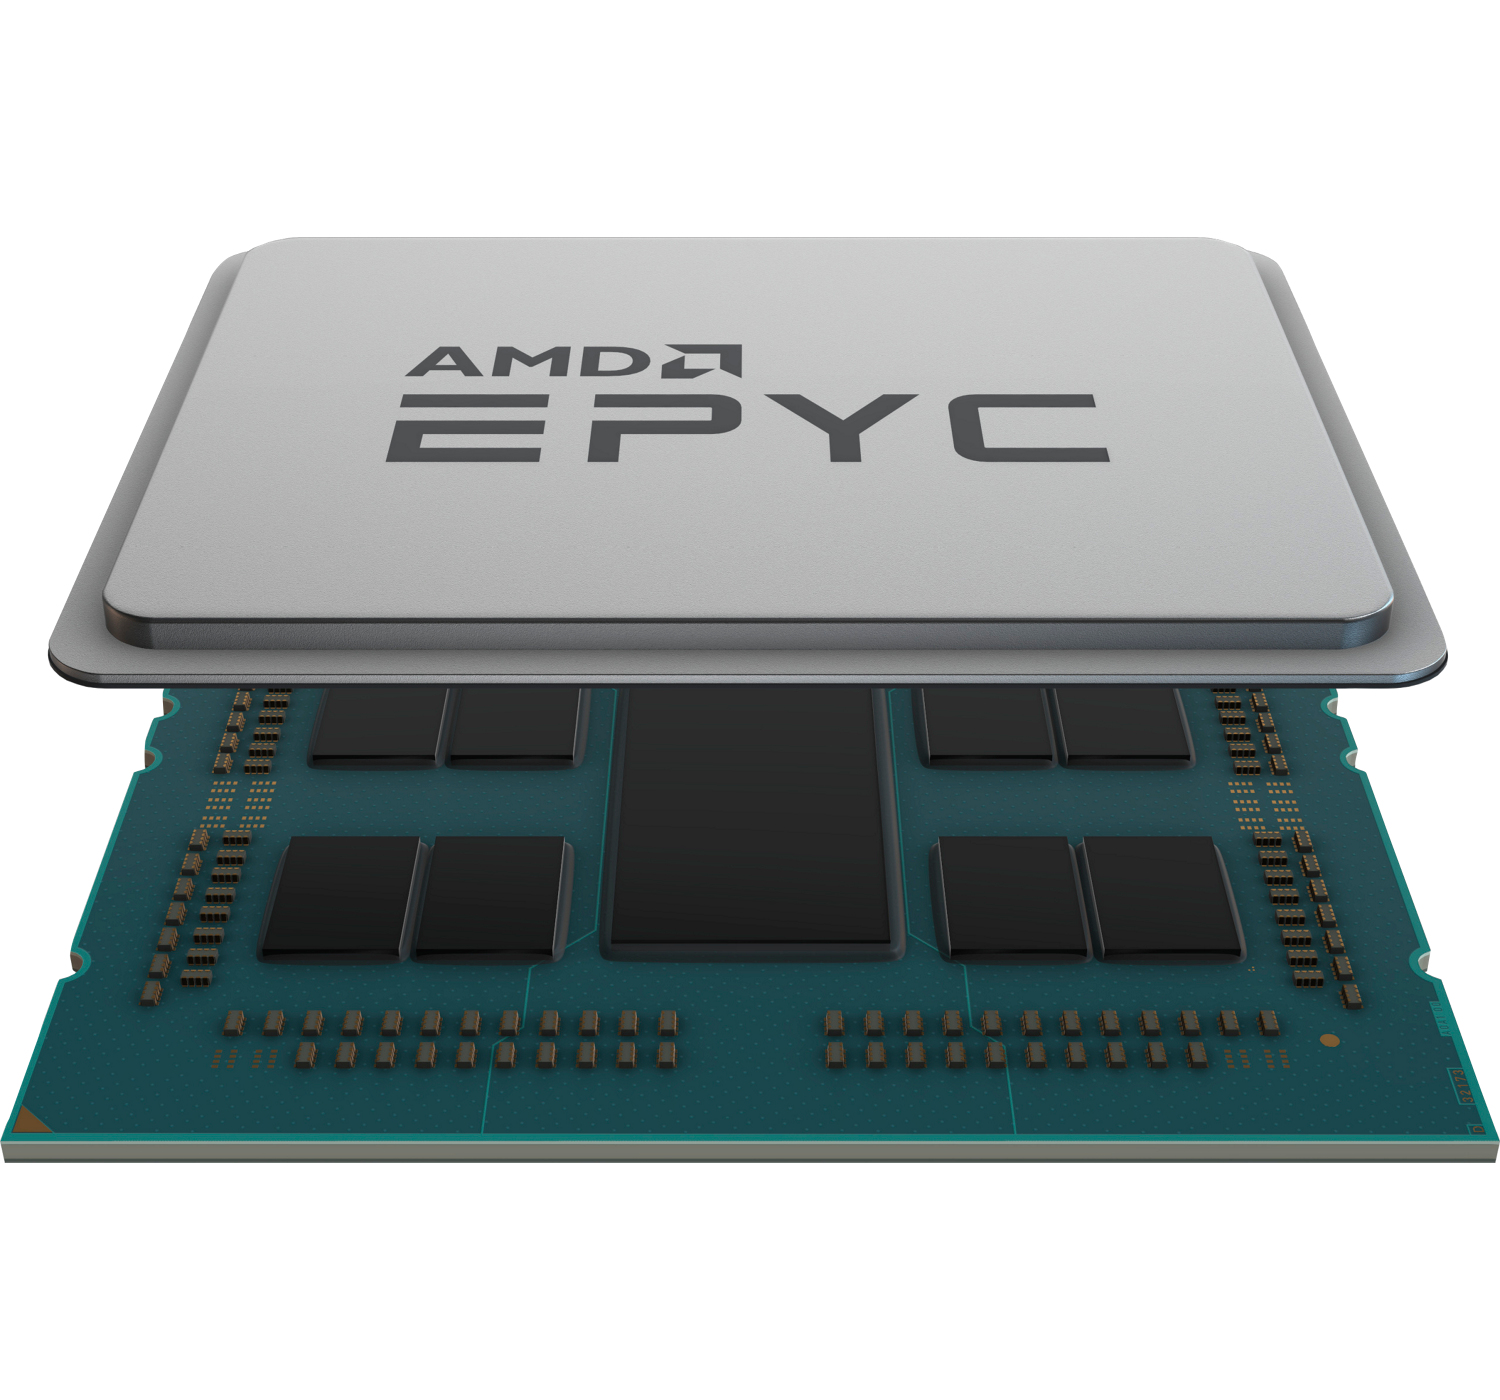 Hewlett Packard Enterprise AMD EPYC 9224 2.5GHz 24-core 200W Processor for HPE